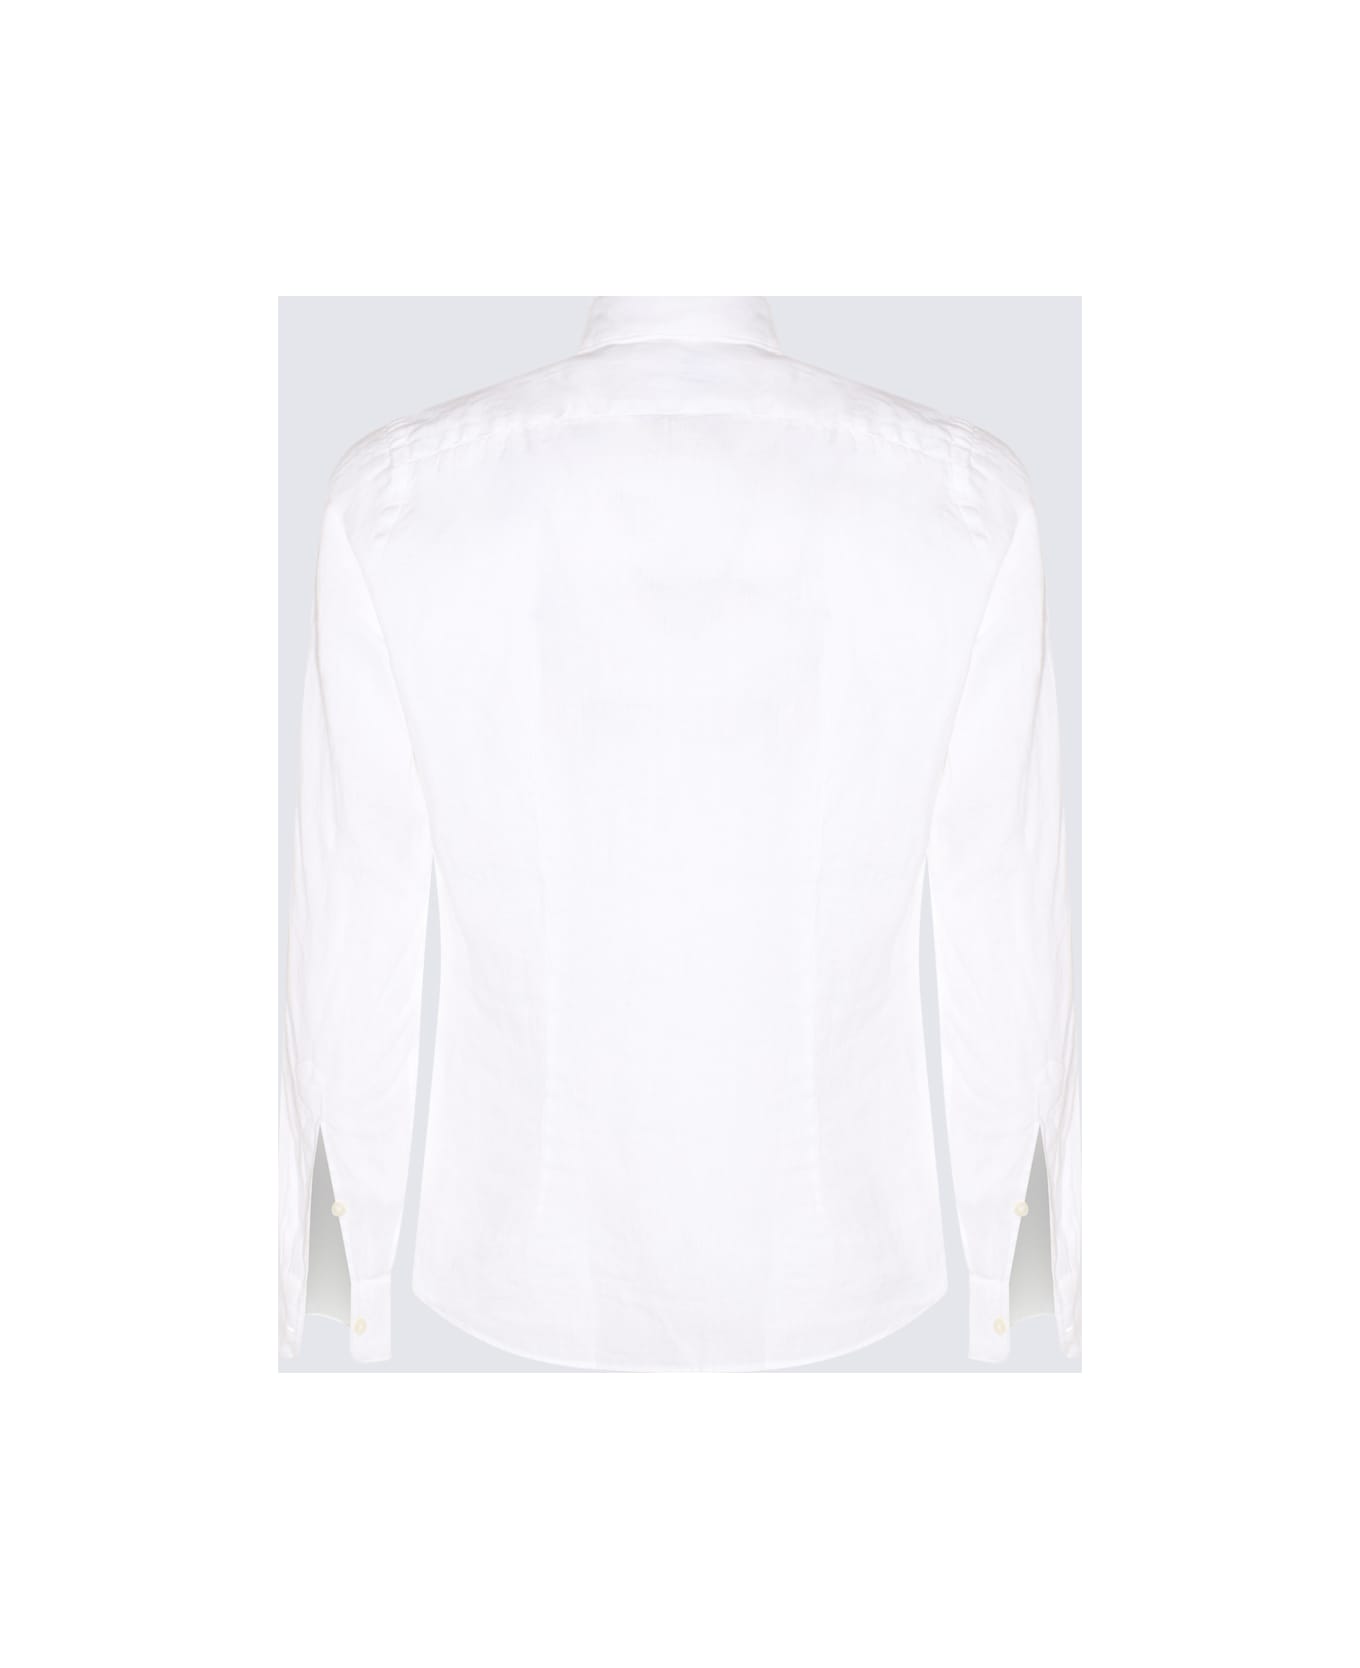 Altea White Linen Shirt - White シャツ